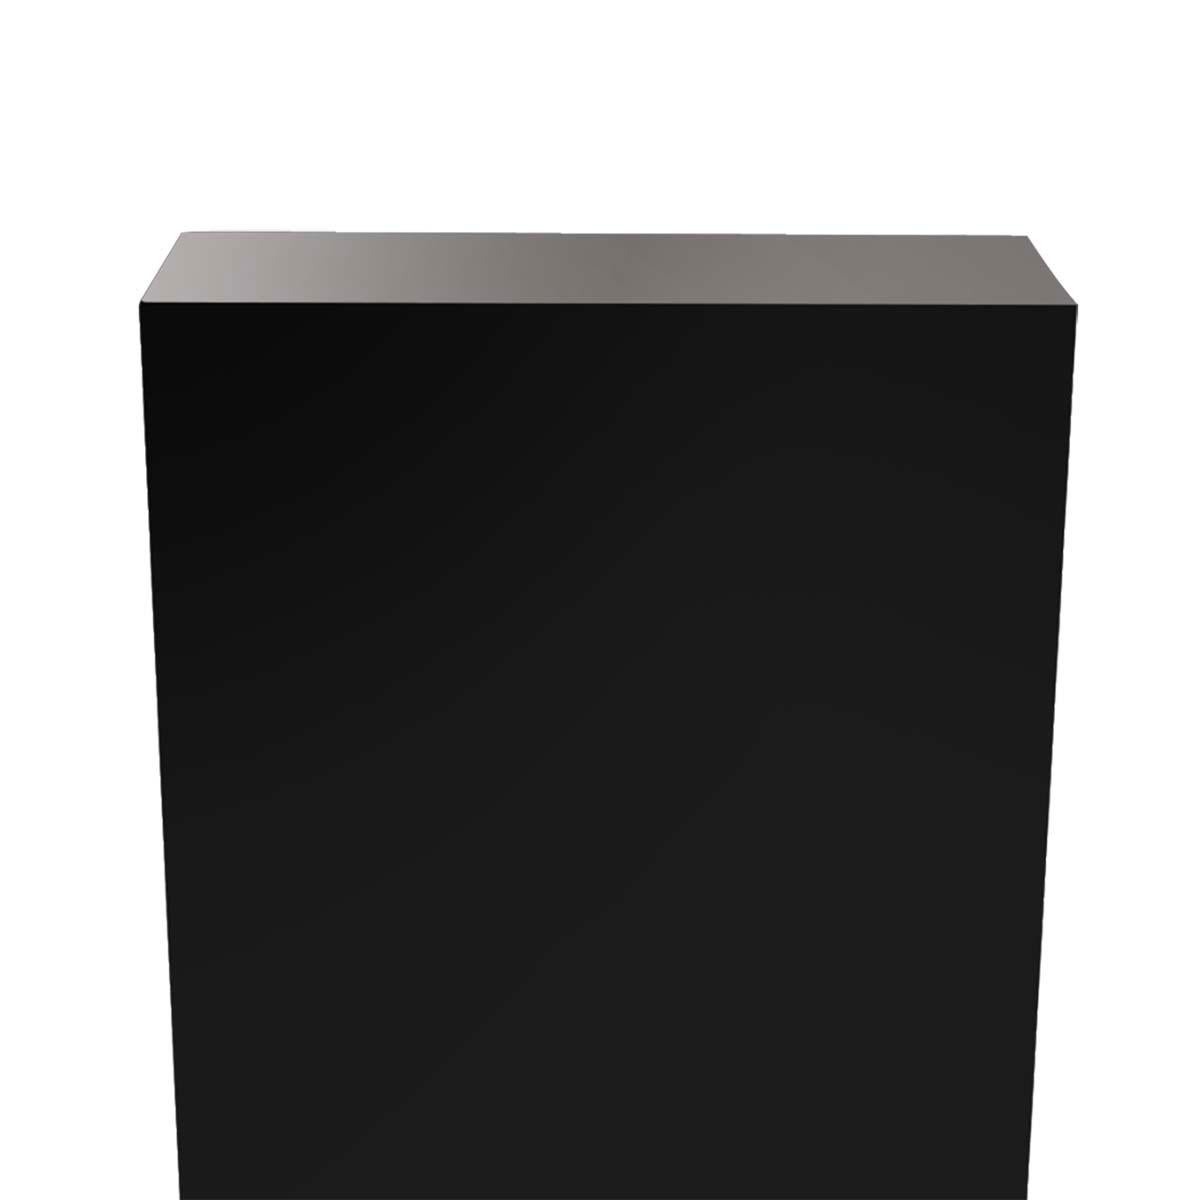 Lacquered Black Lak 1 Pedestal For Sale